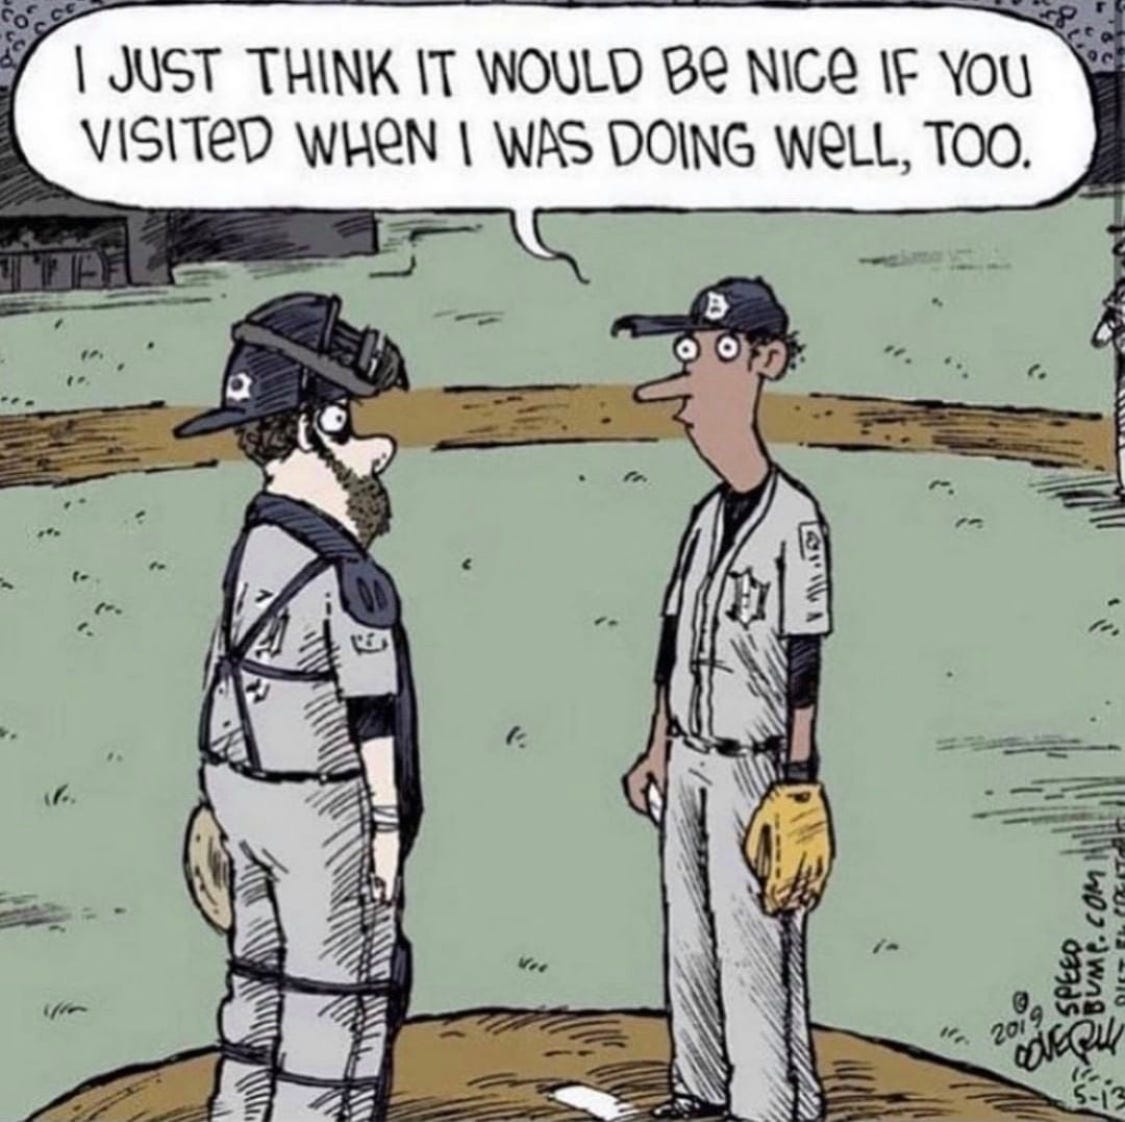 Conversation between a baseball pitcher and catcher.